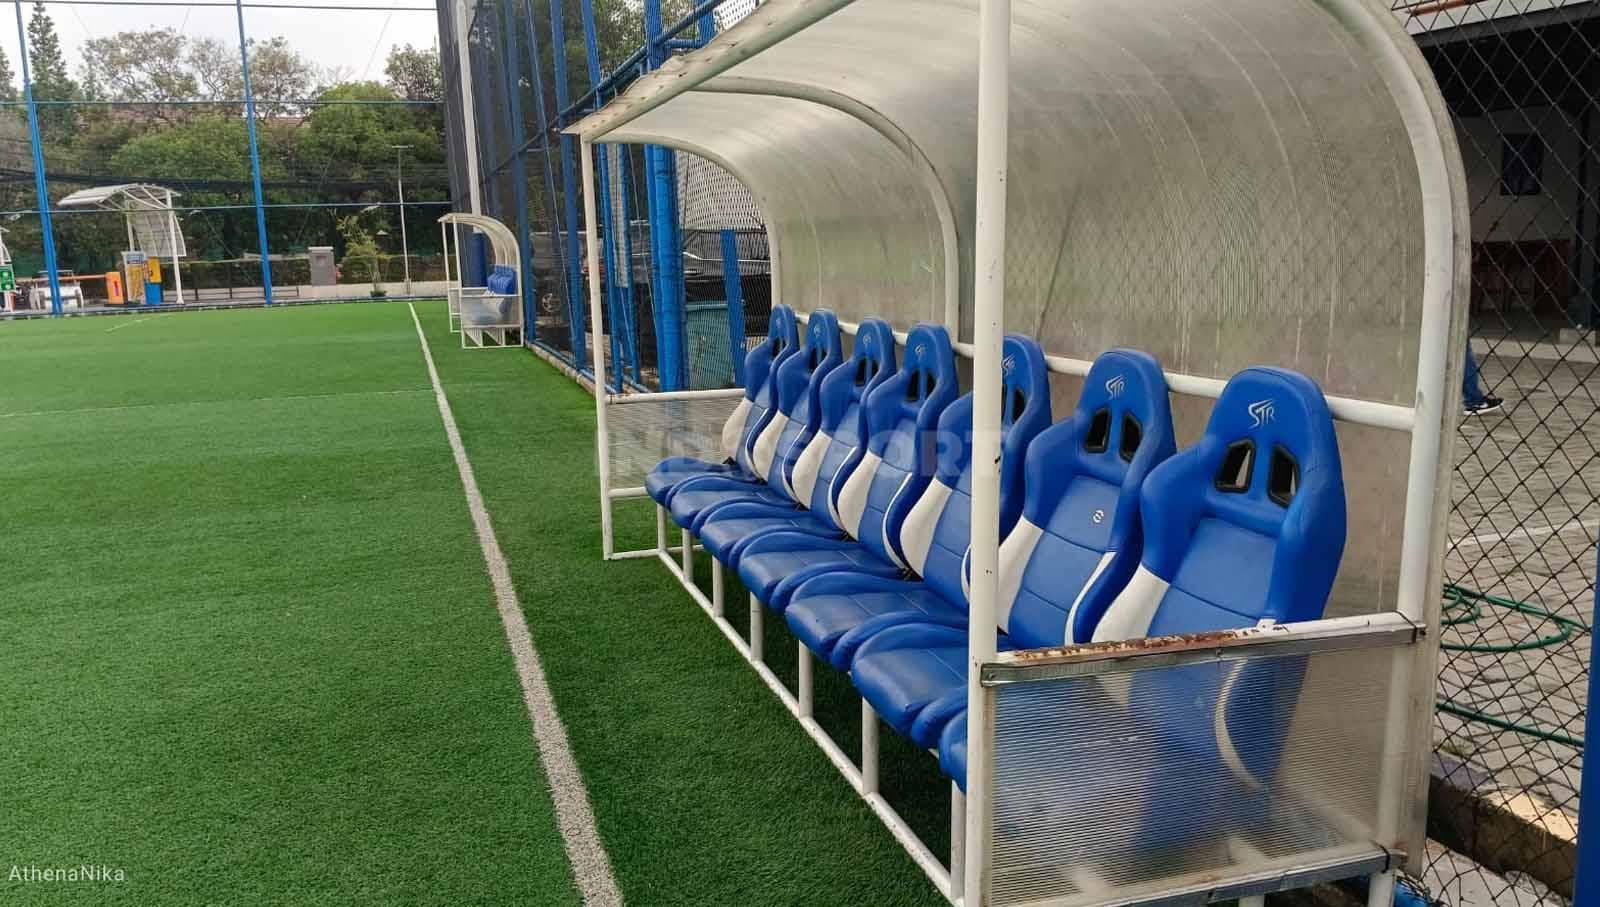 Lapangan latihan Persipu FC menggunakan rumput sintetis. Terdapat dua bench yang tampak terawat karena juga disewakan untuk umum. (Foto: Indra Citra Sena/INDOSPORT)